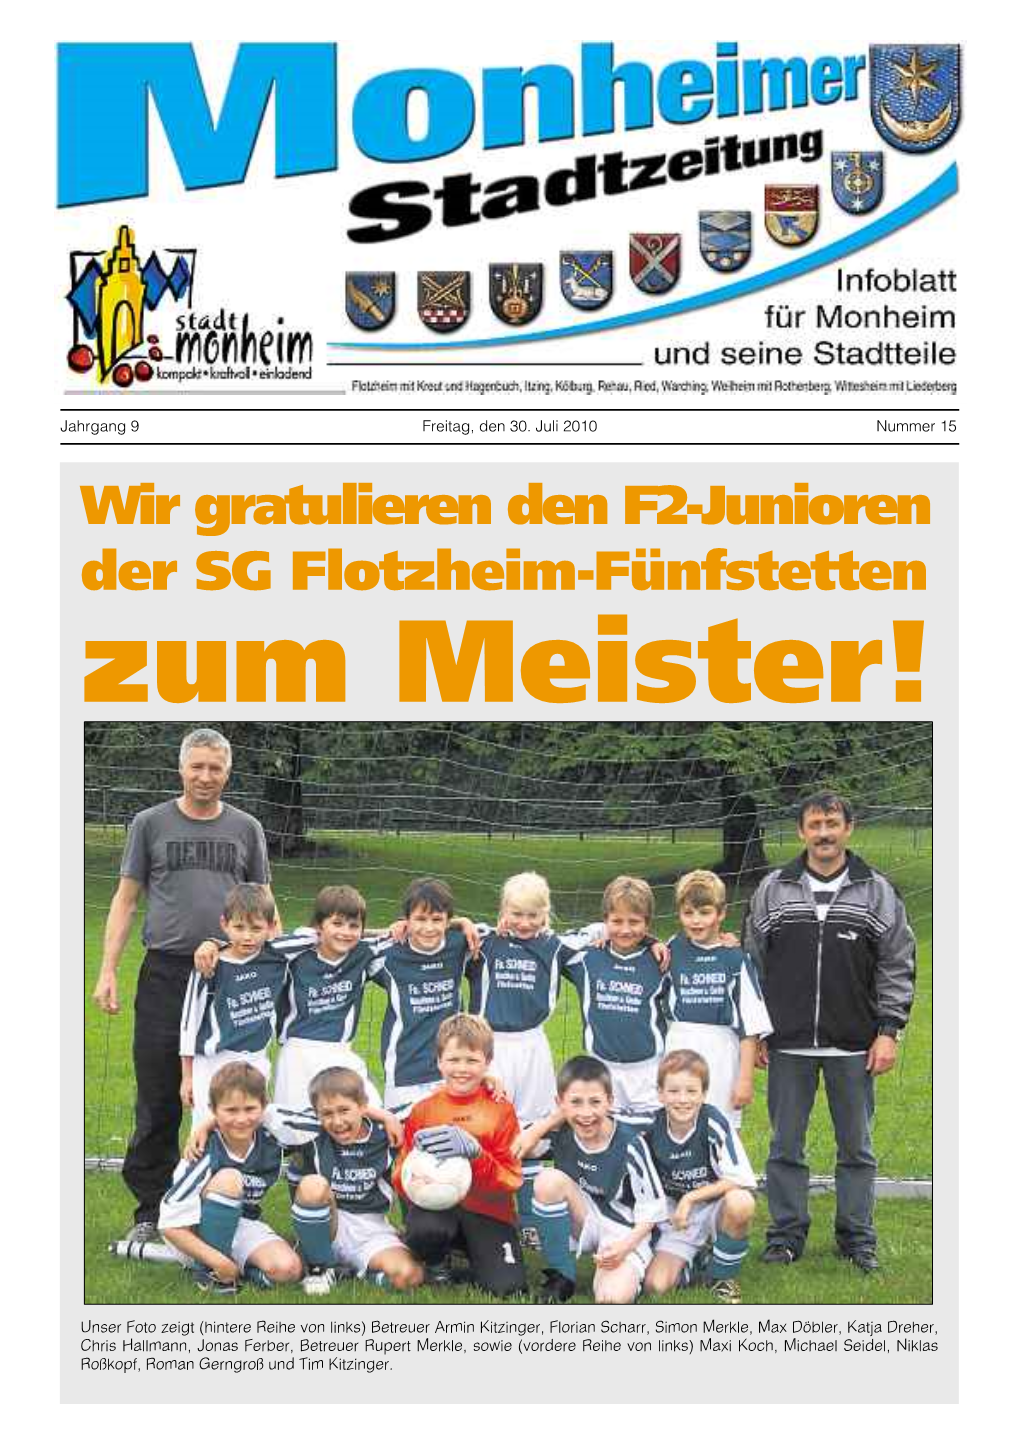 Wir Gratulieren Den F2-Junioren Der SG Flotzheim-Fünfstetten Zum Meister!